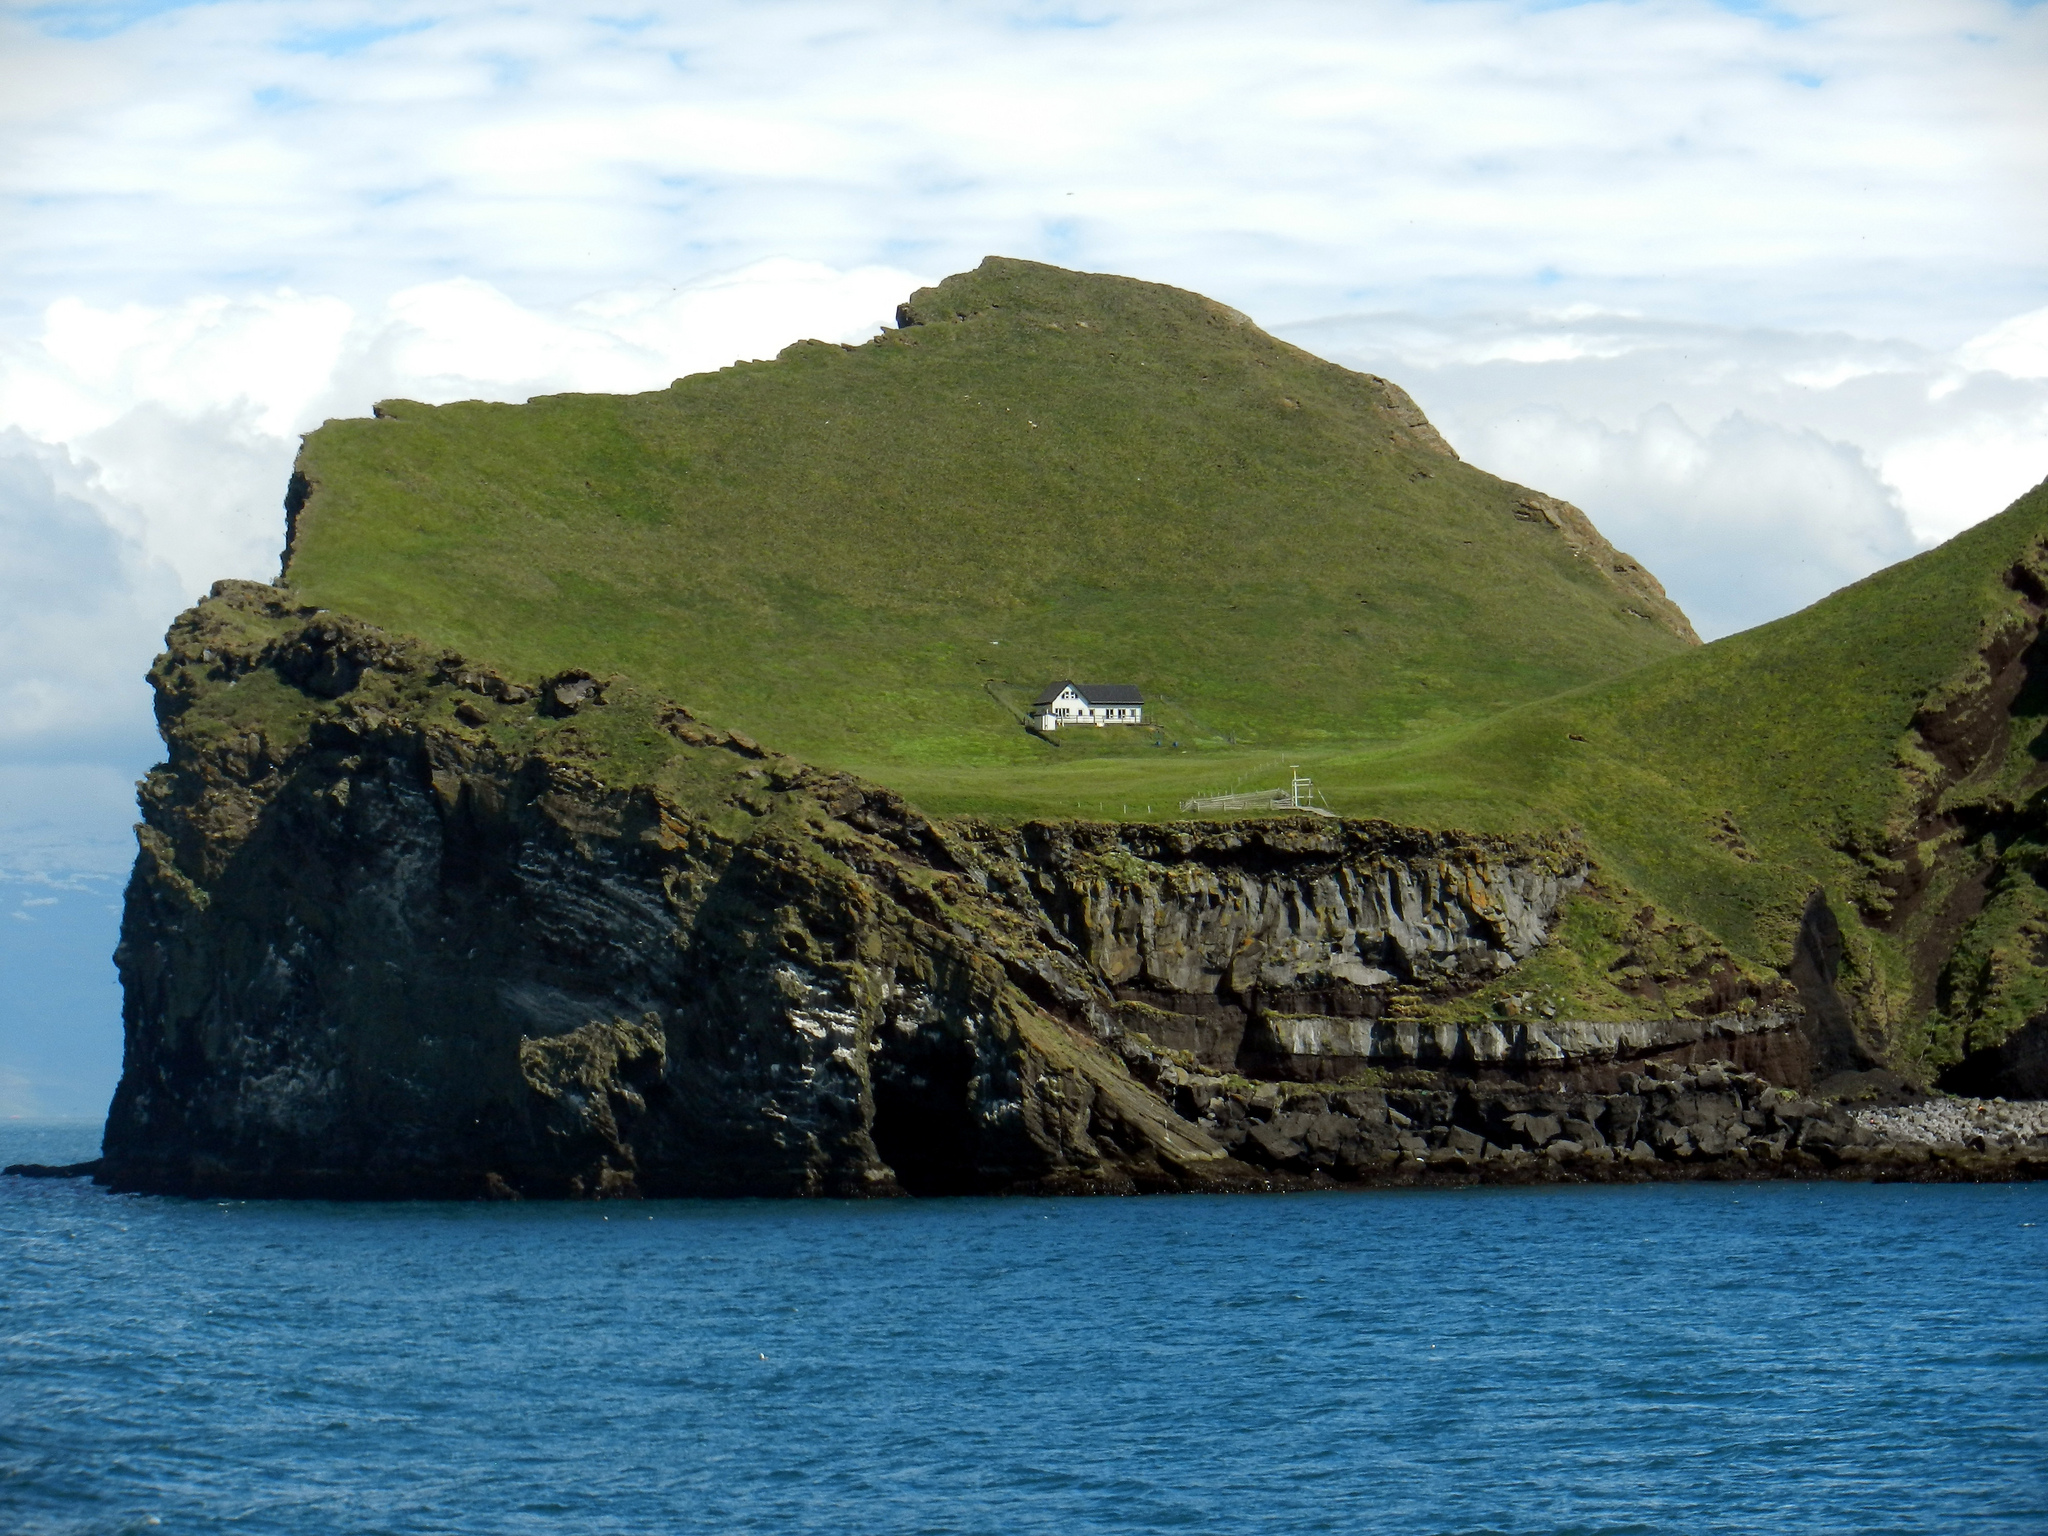 People live on islands. Остров Эллидаэй Исландия. Одинокий дом на острове Эллидаэй Исландия. Остров Эдлидаэй в Исландии. Вестманнаэйяр - архипелаг в Исландии.